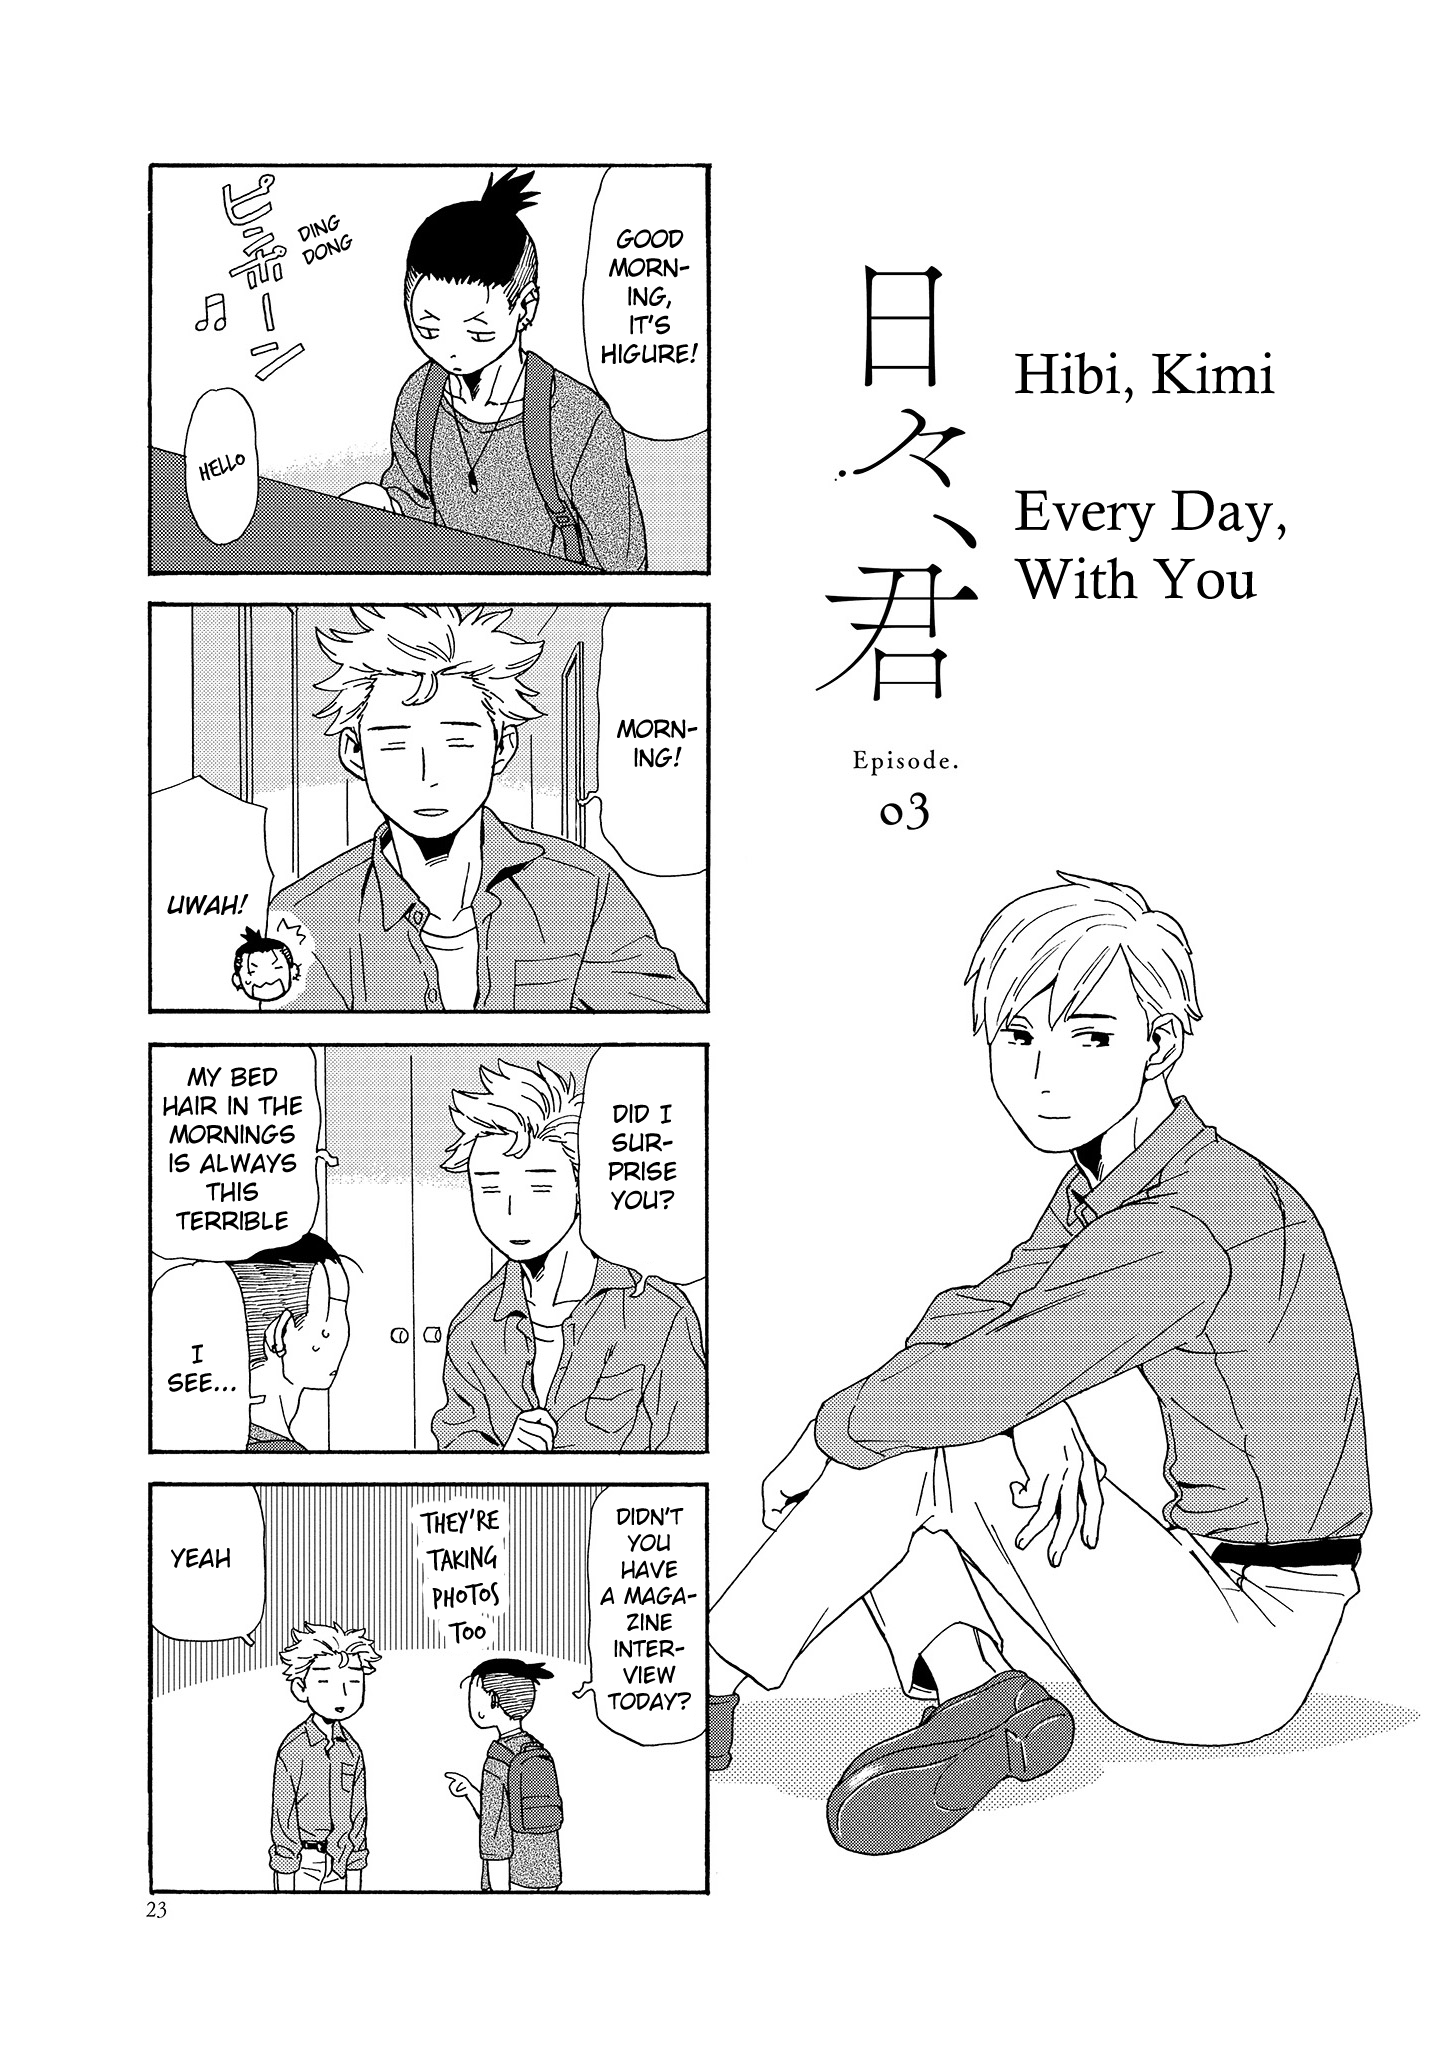 Hibi, Kimi Vol.1 Chapter 3 - Picture 2